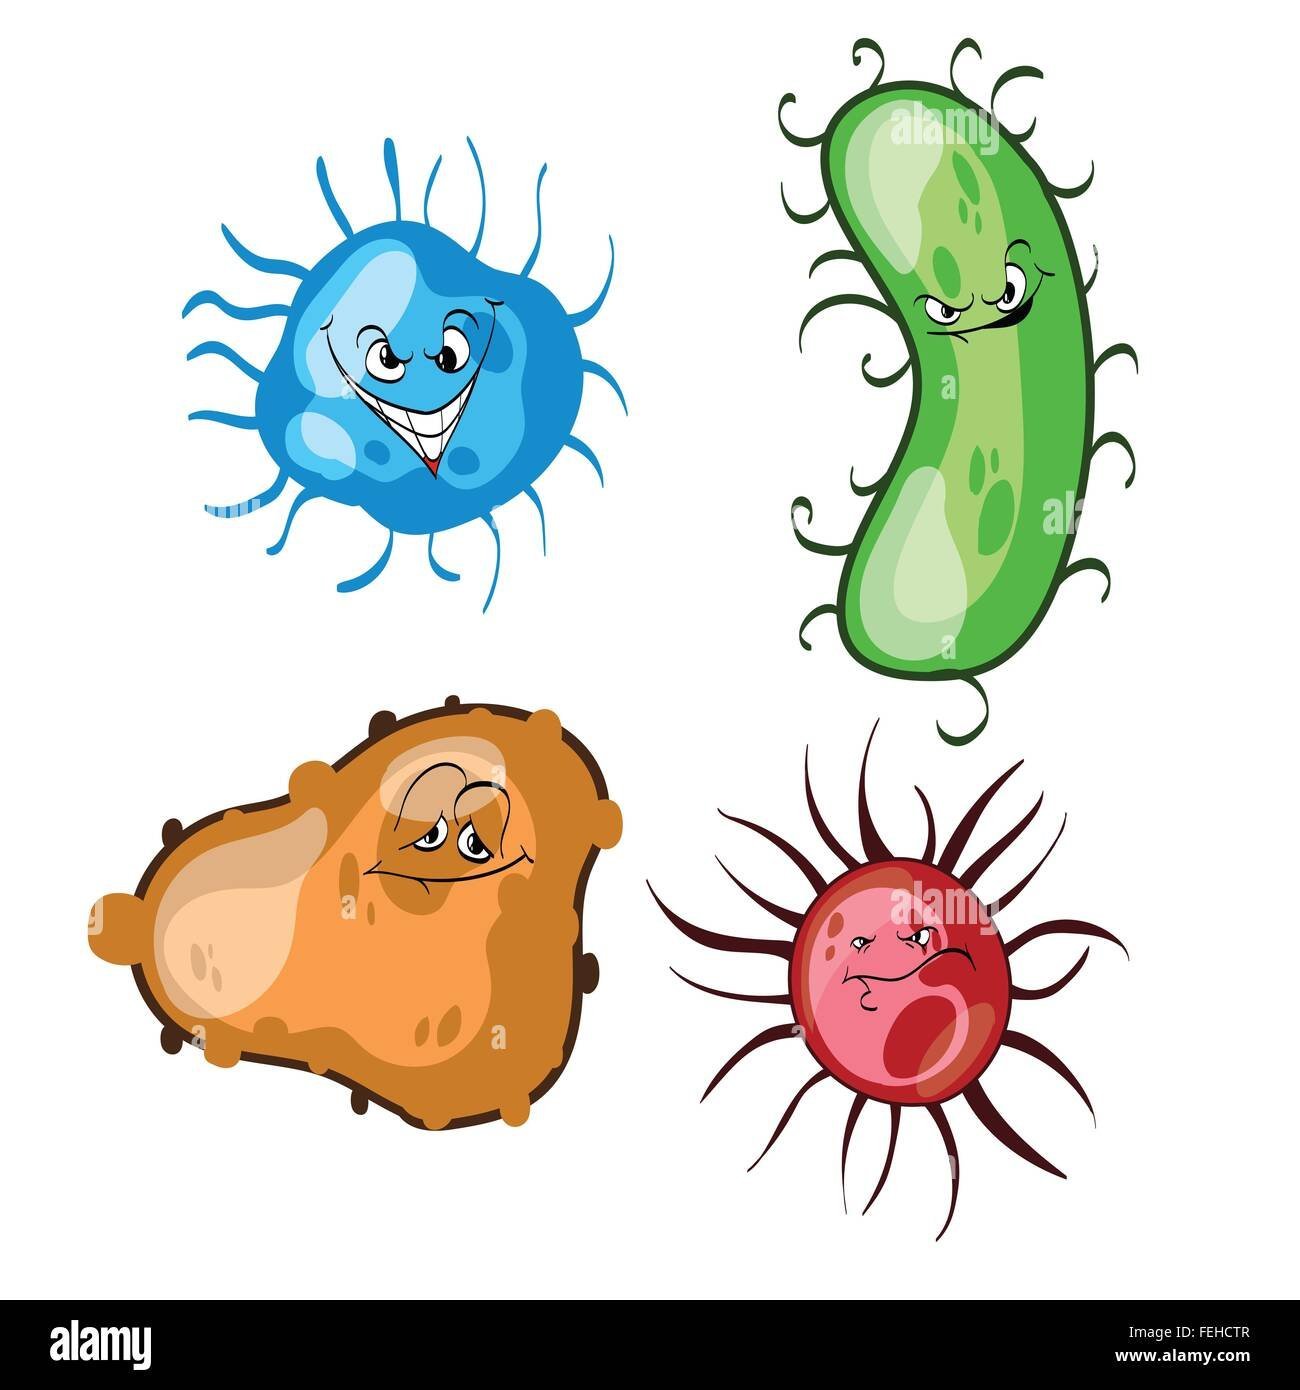 Рисунок микроба в детский сад фото